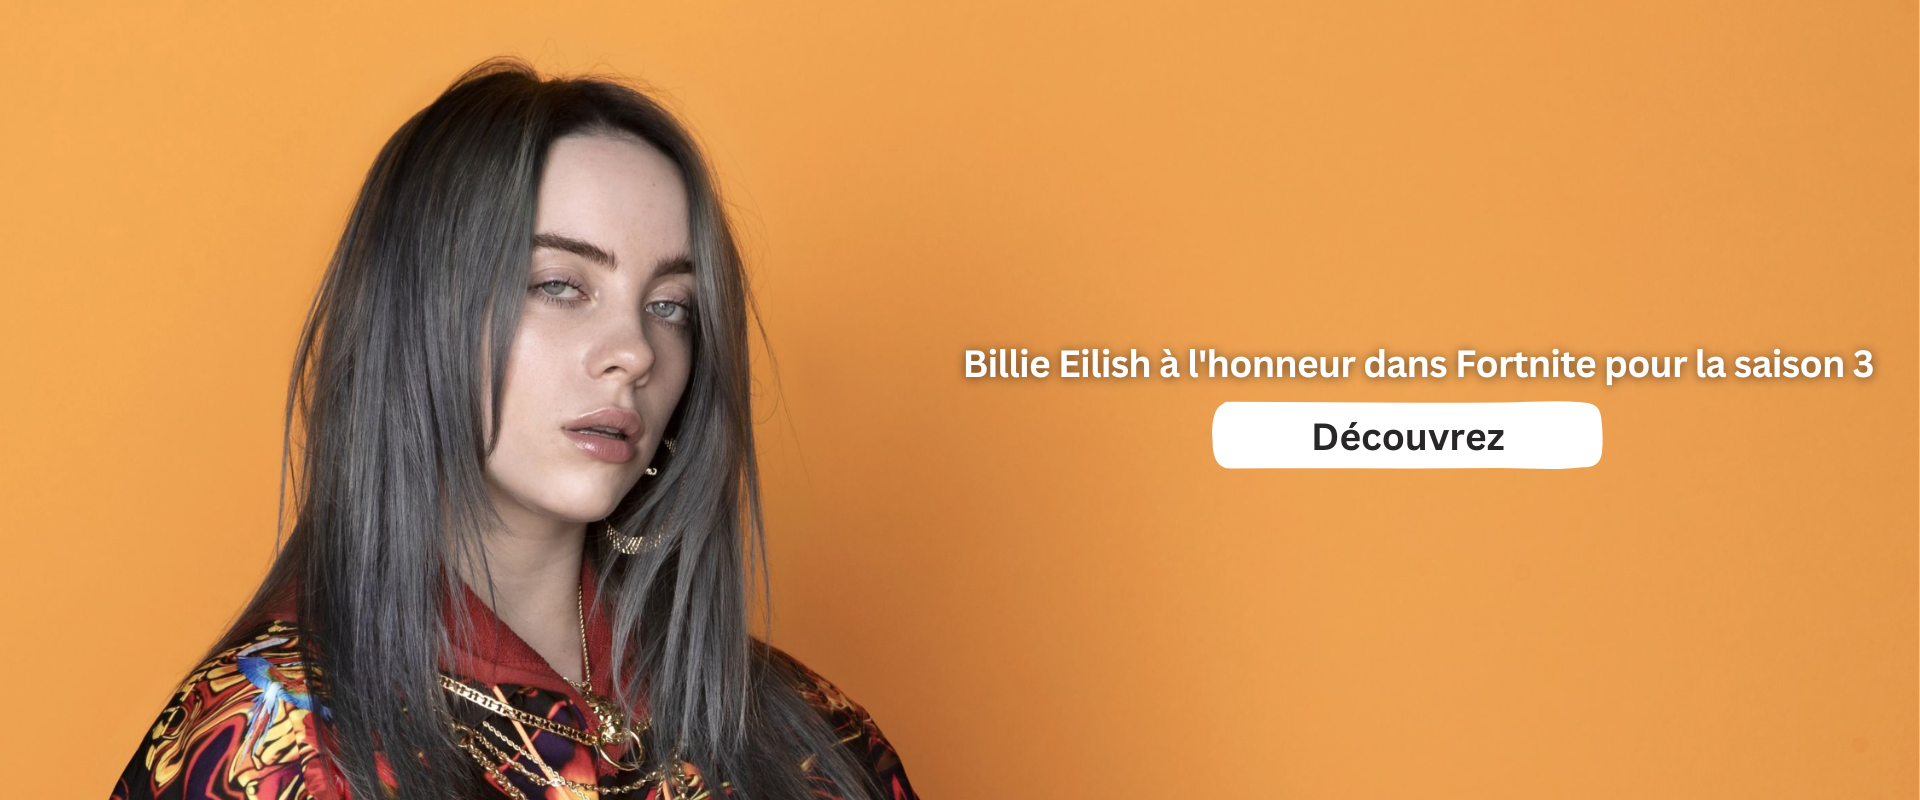 Billie Eilish à l'honneur dans Fortnite pour la saison 3